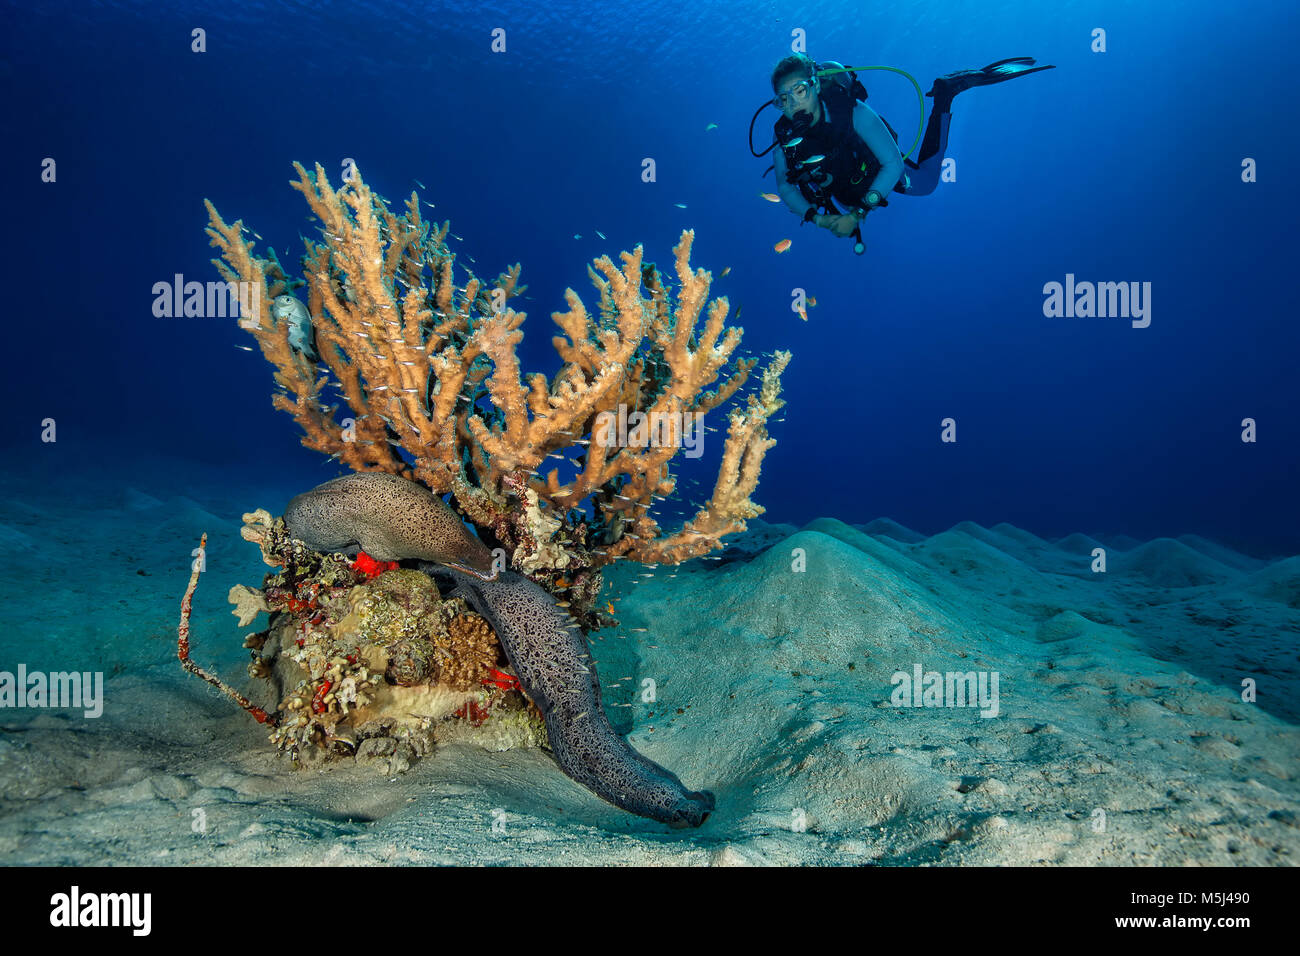 Egitto, Mar Rosso, Hurghada, subacqueo e murena gigante Foto Stock